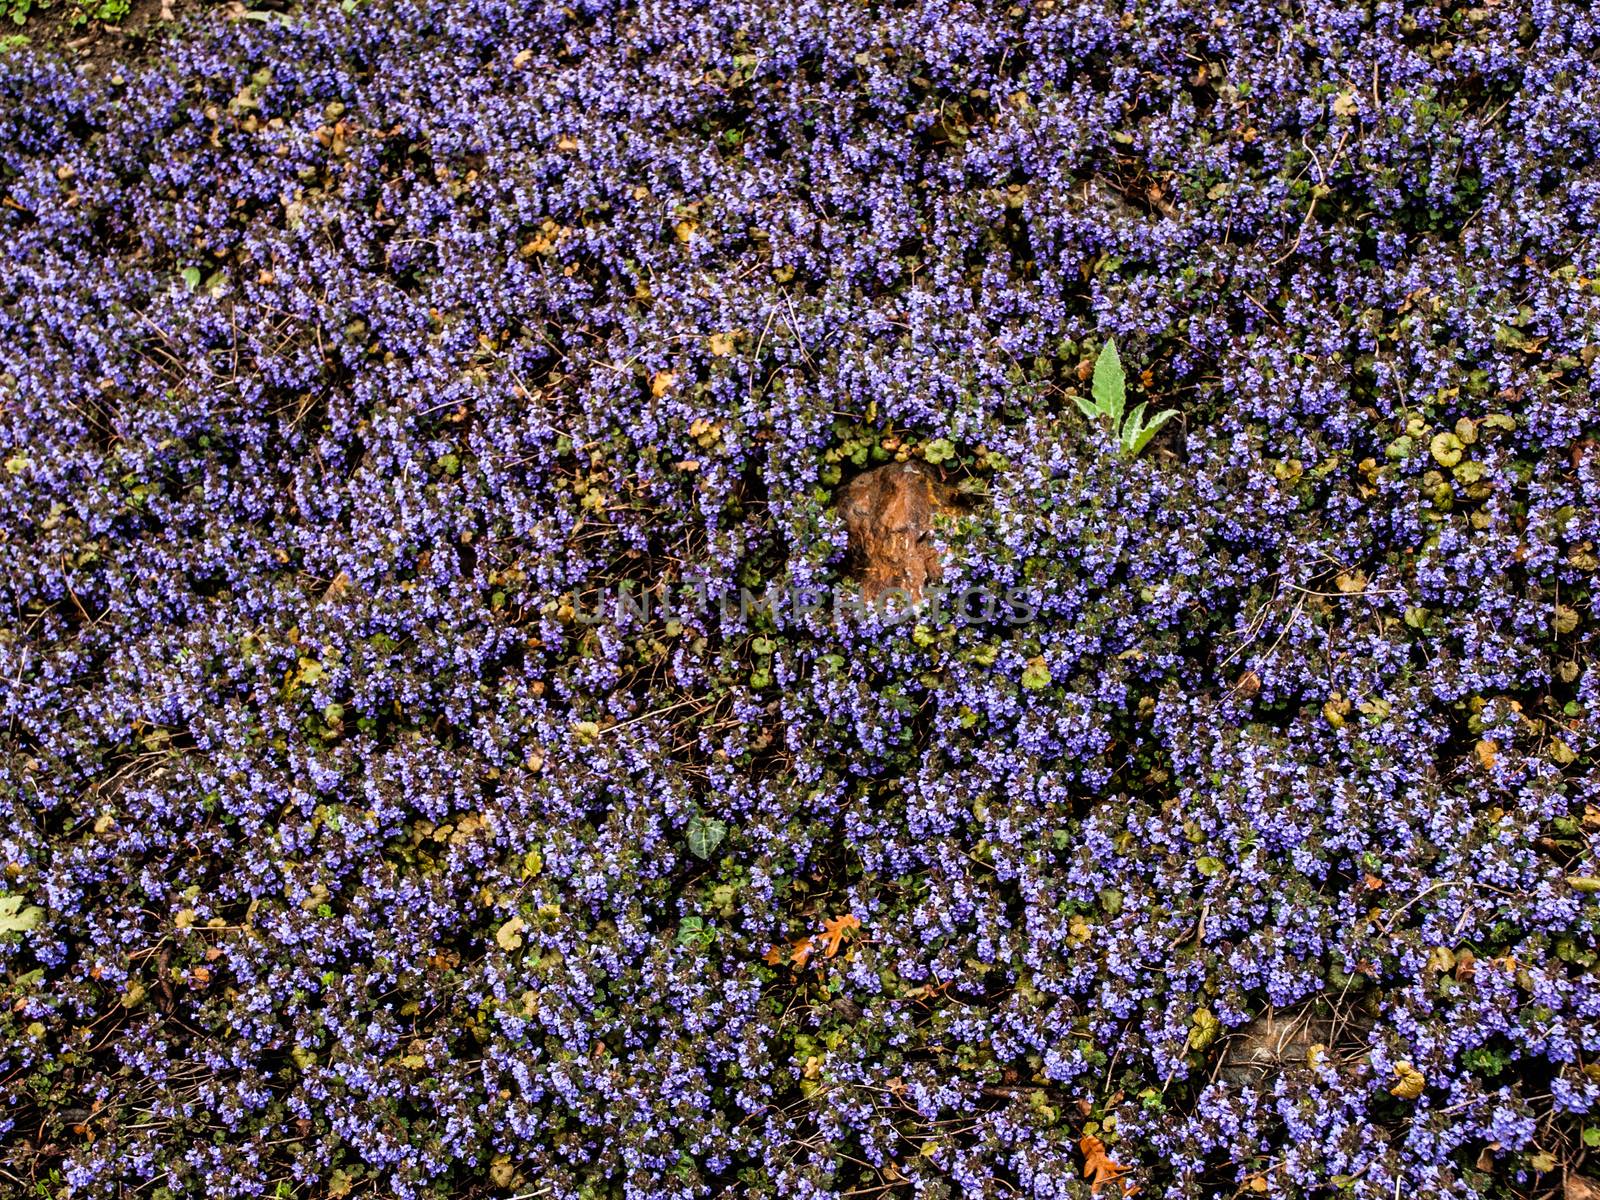 Tiny violet flowers like violet carpet